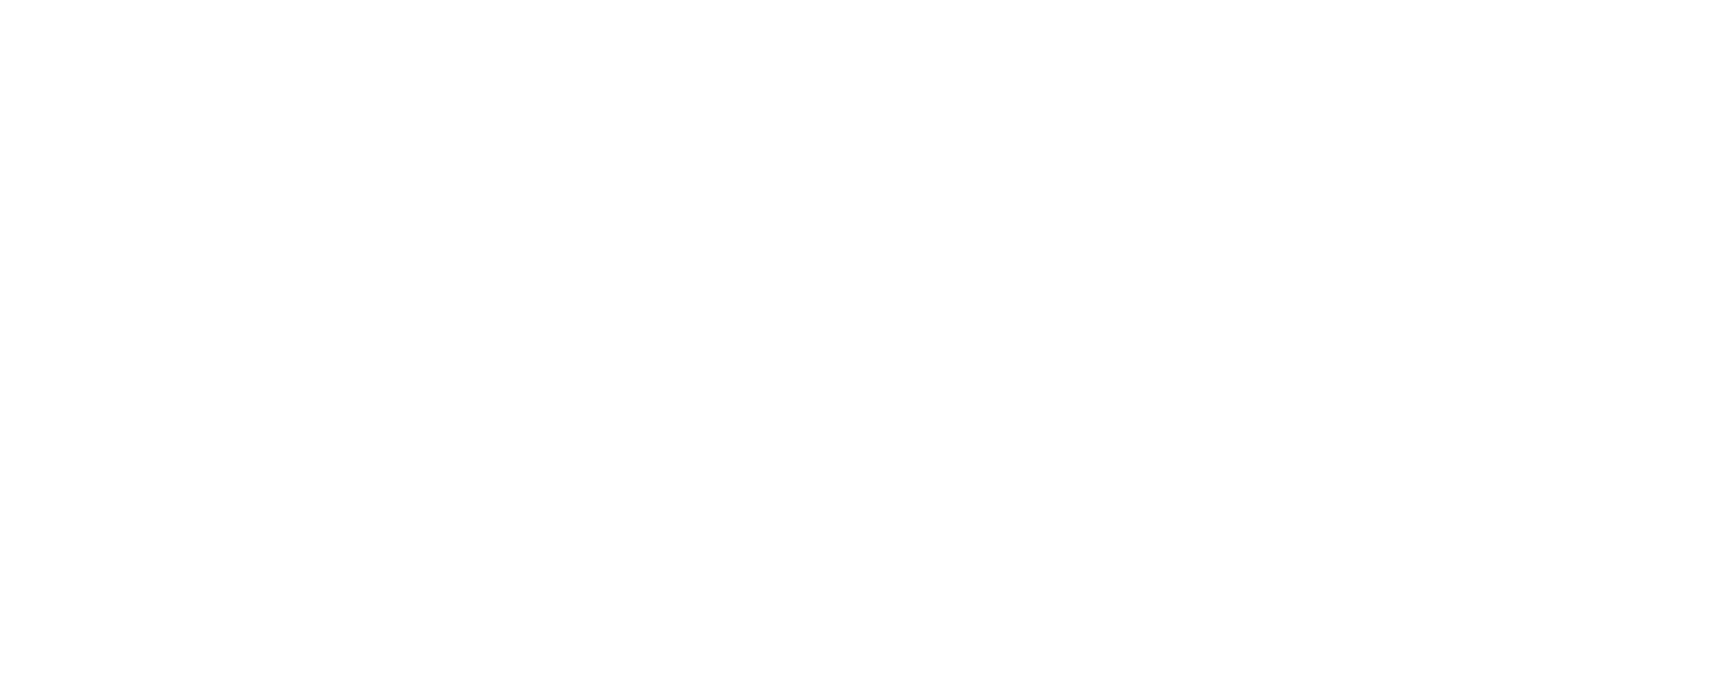 Neo Zenix